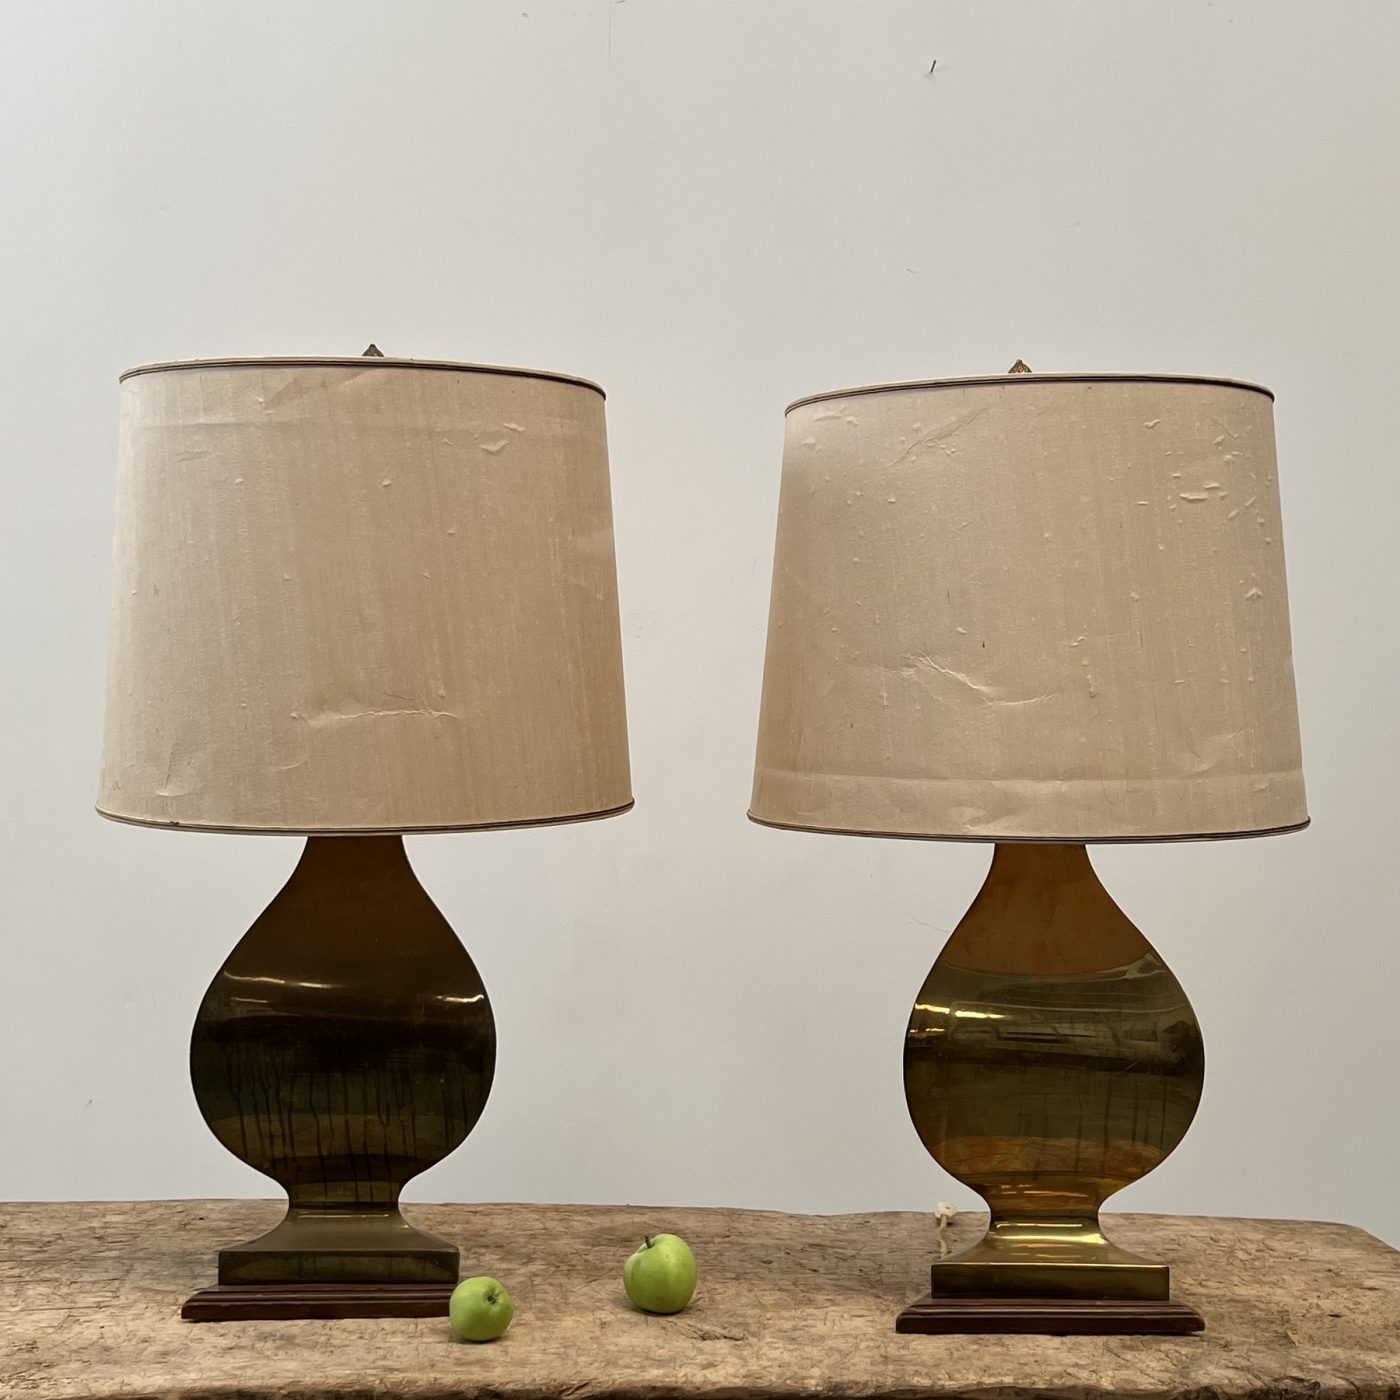 objet-vagabond-copper-lamps0002